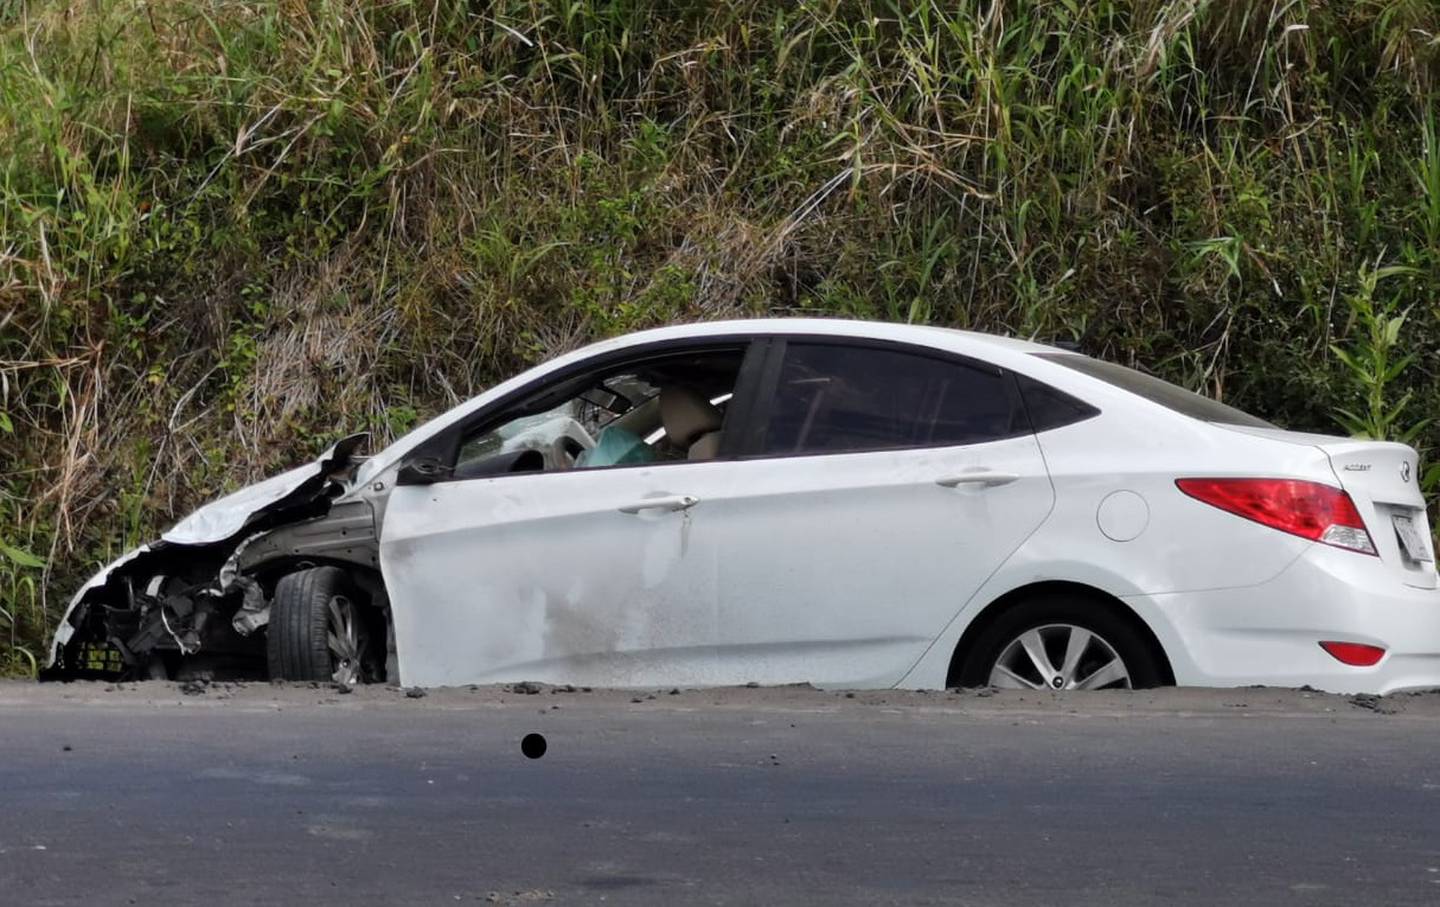 Pareja fallece en accidente de tránsito en Siquirres, Limón. Foto Reyner Montero.